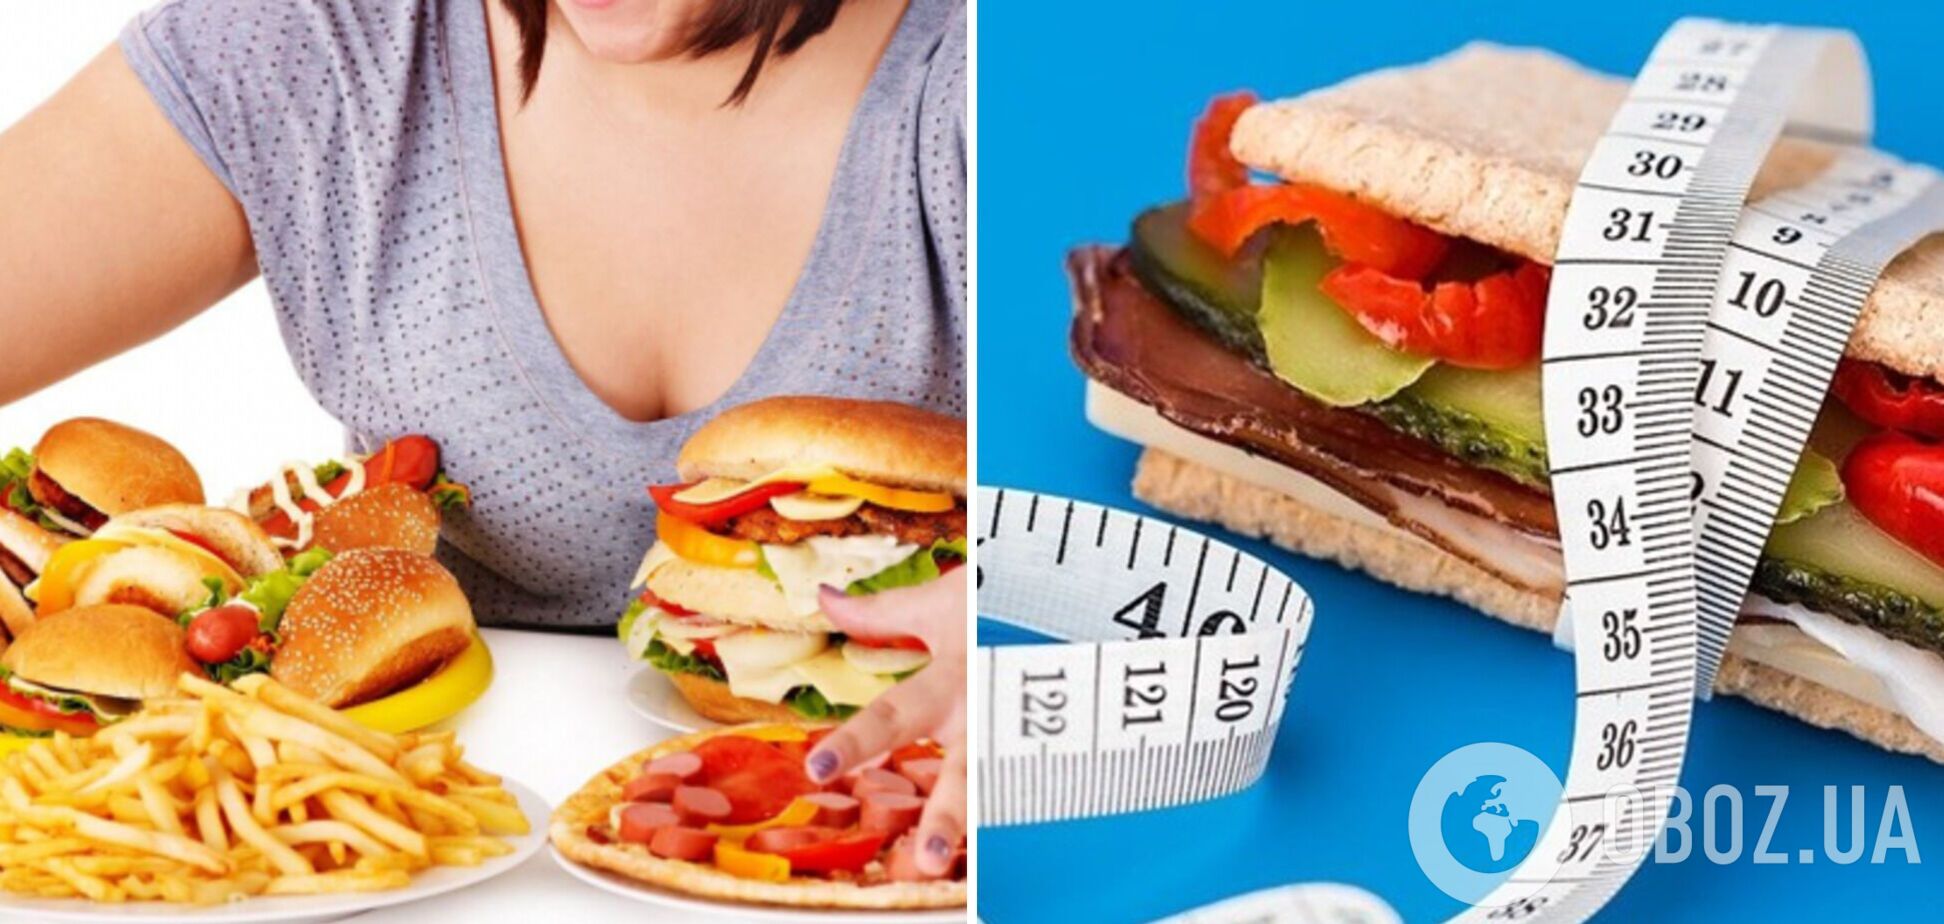 Сім причин переїдання: тест на визначення порушення харчової поведінки